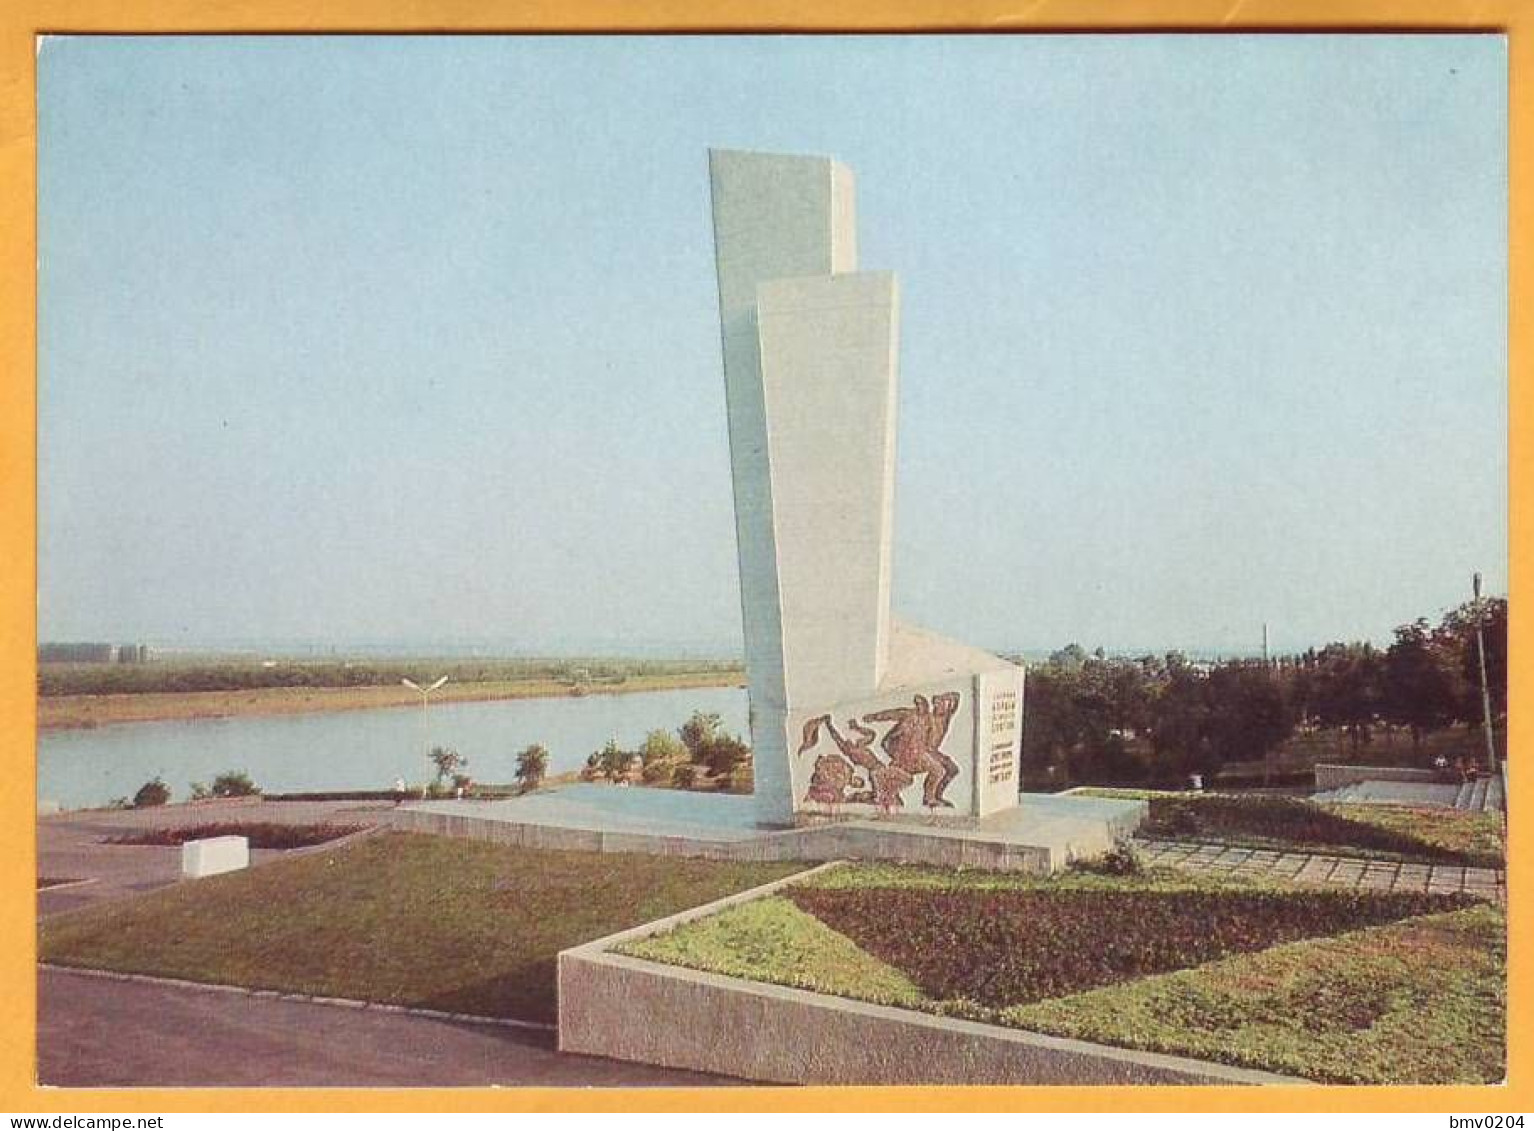 1980, Moldova Moldavie UdSSR USSR  Bender. Monument To Fighters For Soviet Power Transnistria - 1980-91